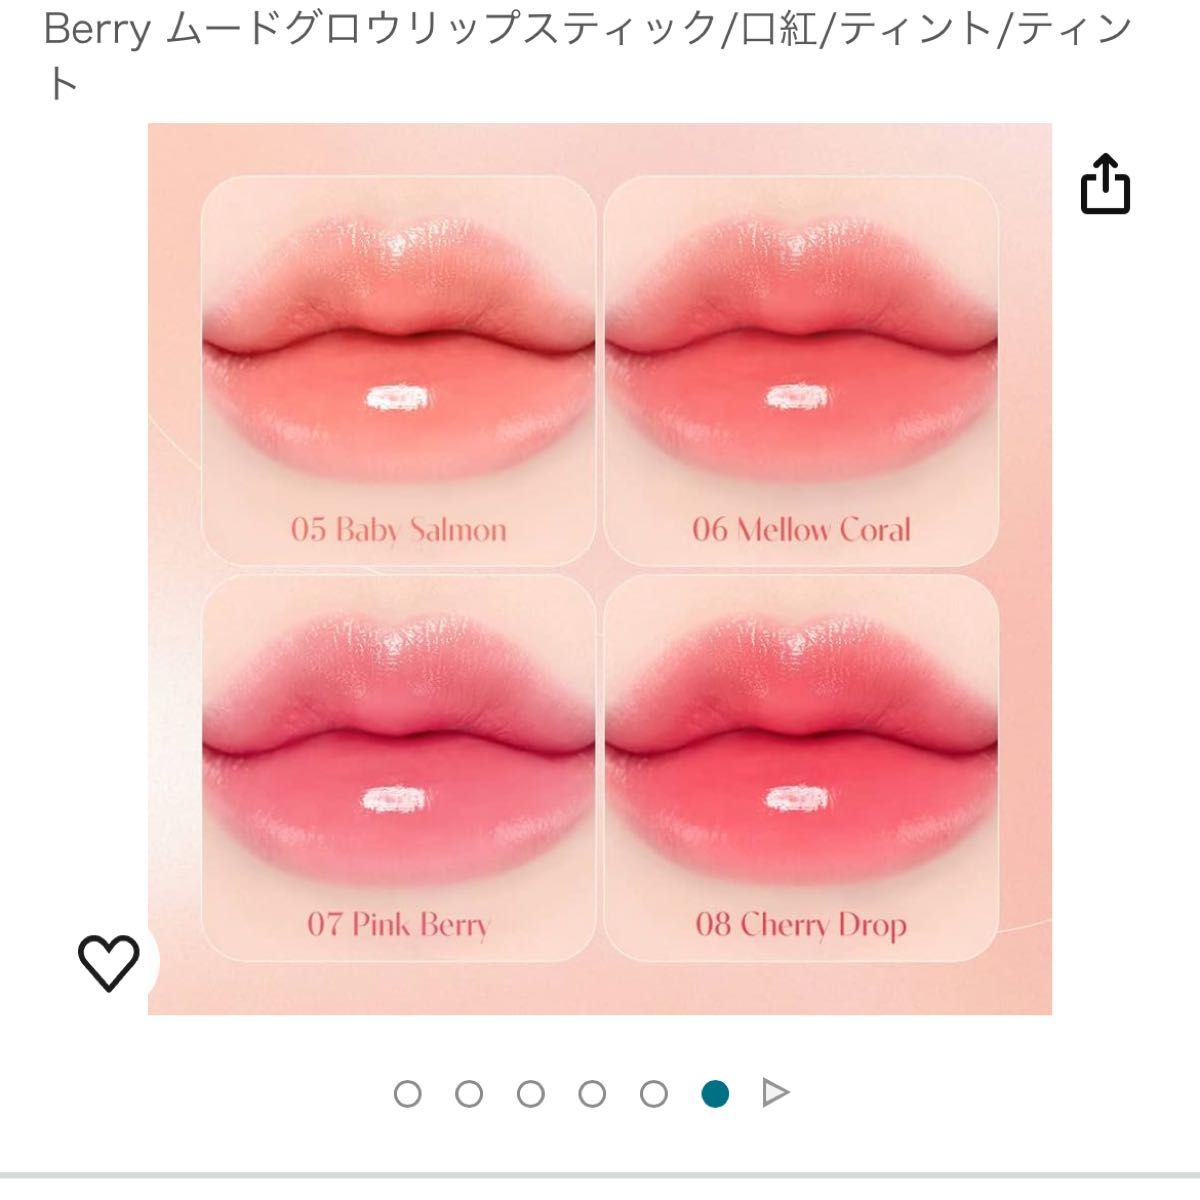 デイジーク dasique mood glow lipstick 07 Pink Berry ムードグロウリップスティック/口紅